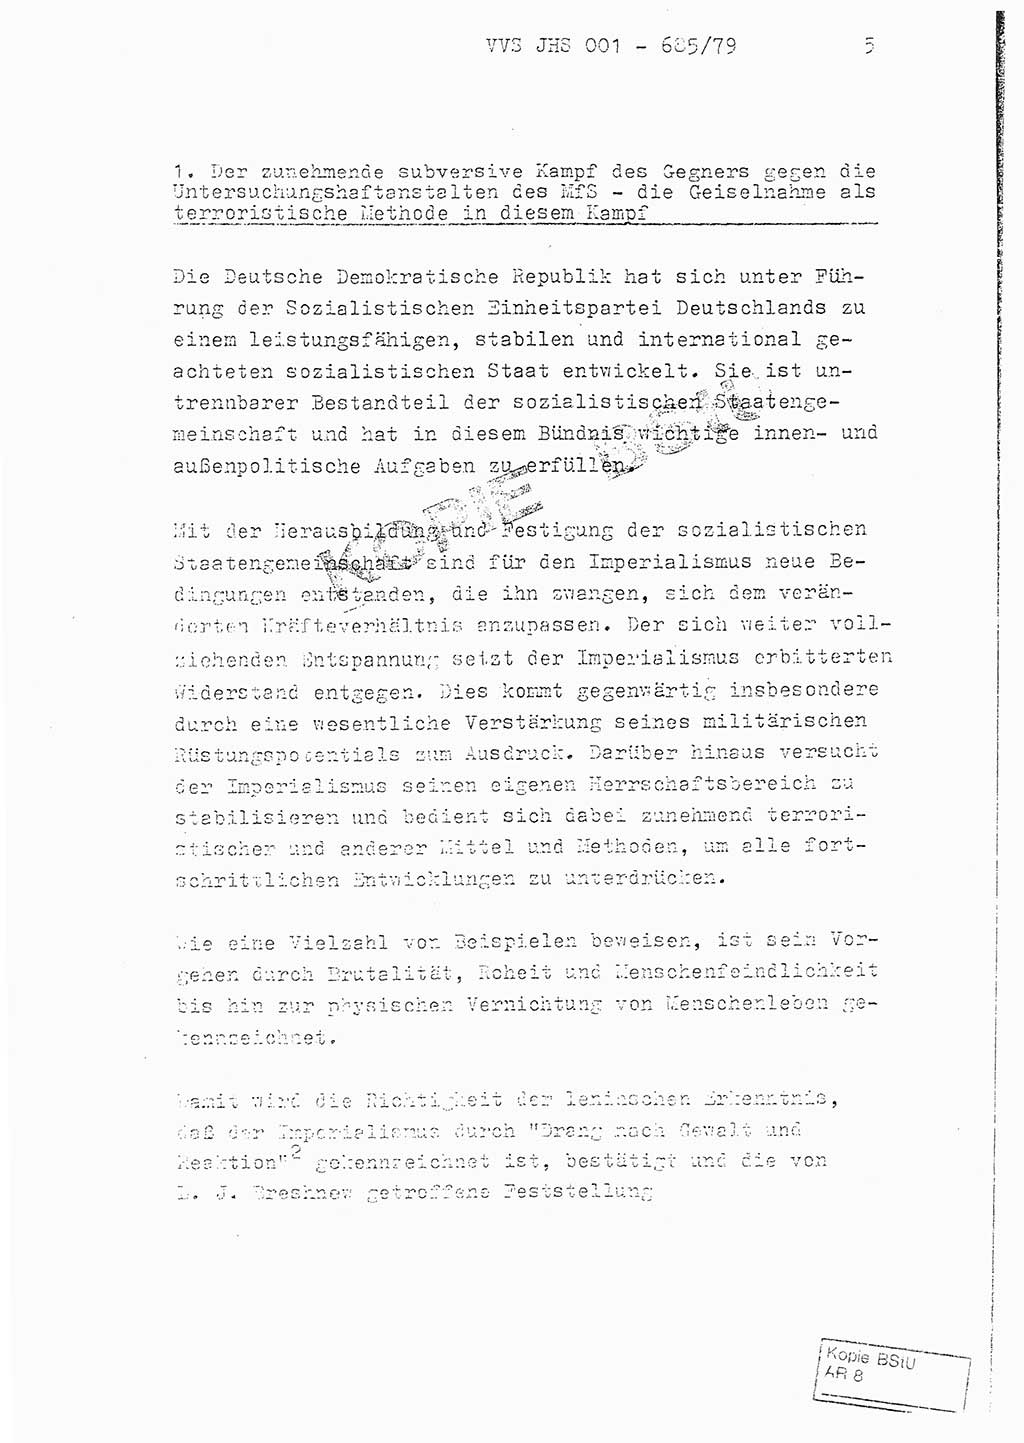 Fachschulabschlußarbeit Oberleutnant Helmut Peckruhn (BV Bln. Abt. ⅩⅣ), Ministerium für Staatssicherheit (MfS) [Deutsche Demokratische Republik (DDR)], Juristische Hochschule (JHS), Vertrauliche Verschlußsache (VVS) 001-685/79, Potsdam 1979, Seite 5 (FS-Abschl.-Arb. MfS DDR JHS VVS 001-685/79 1979, S. 5)